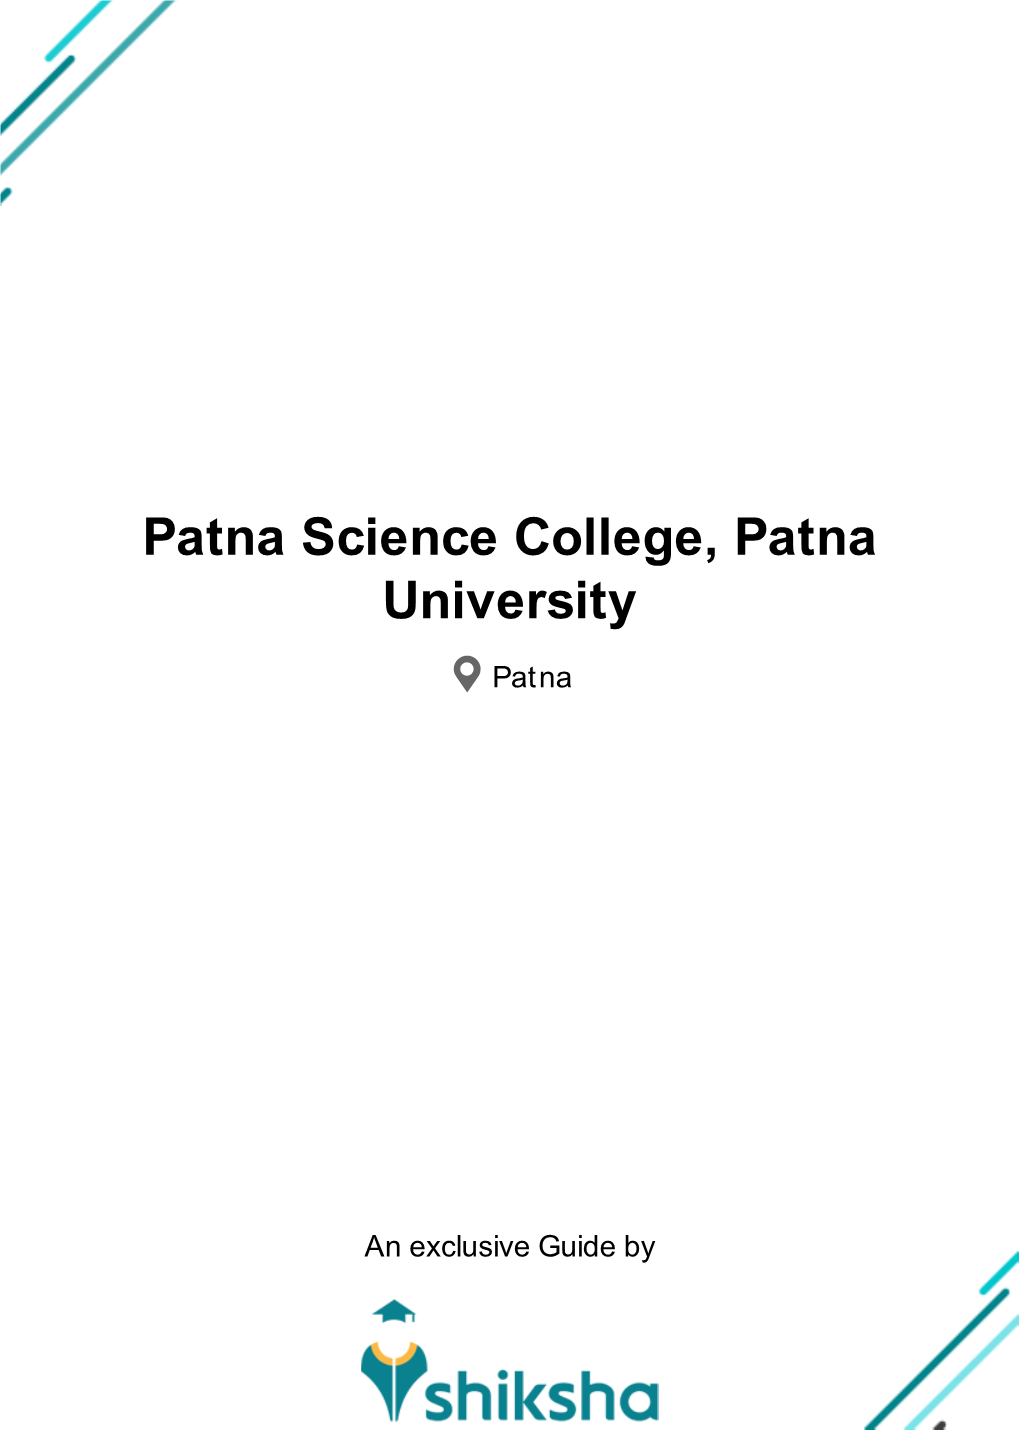 Patna Science College, Patna University